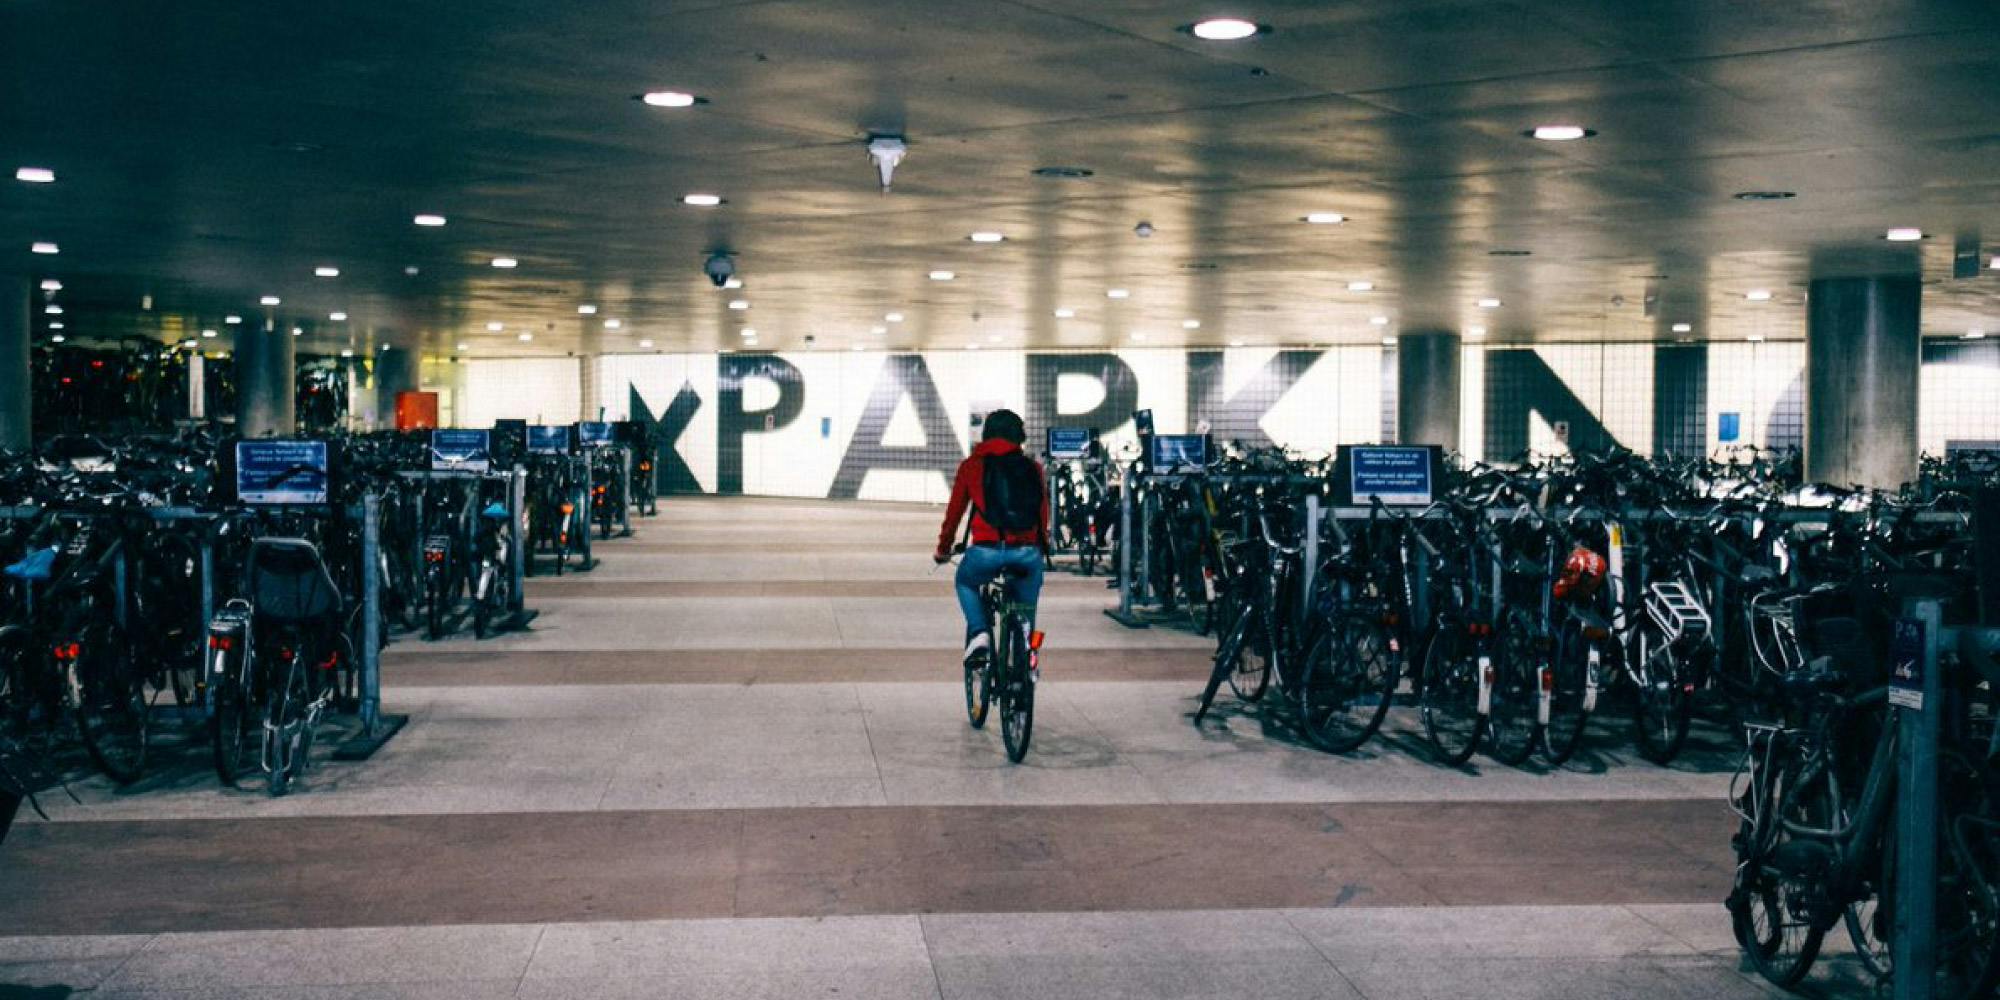 Tegen 2026 wordt fietsen comfortabeler en veiliger dankzij inzichten uit data spaces